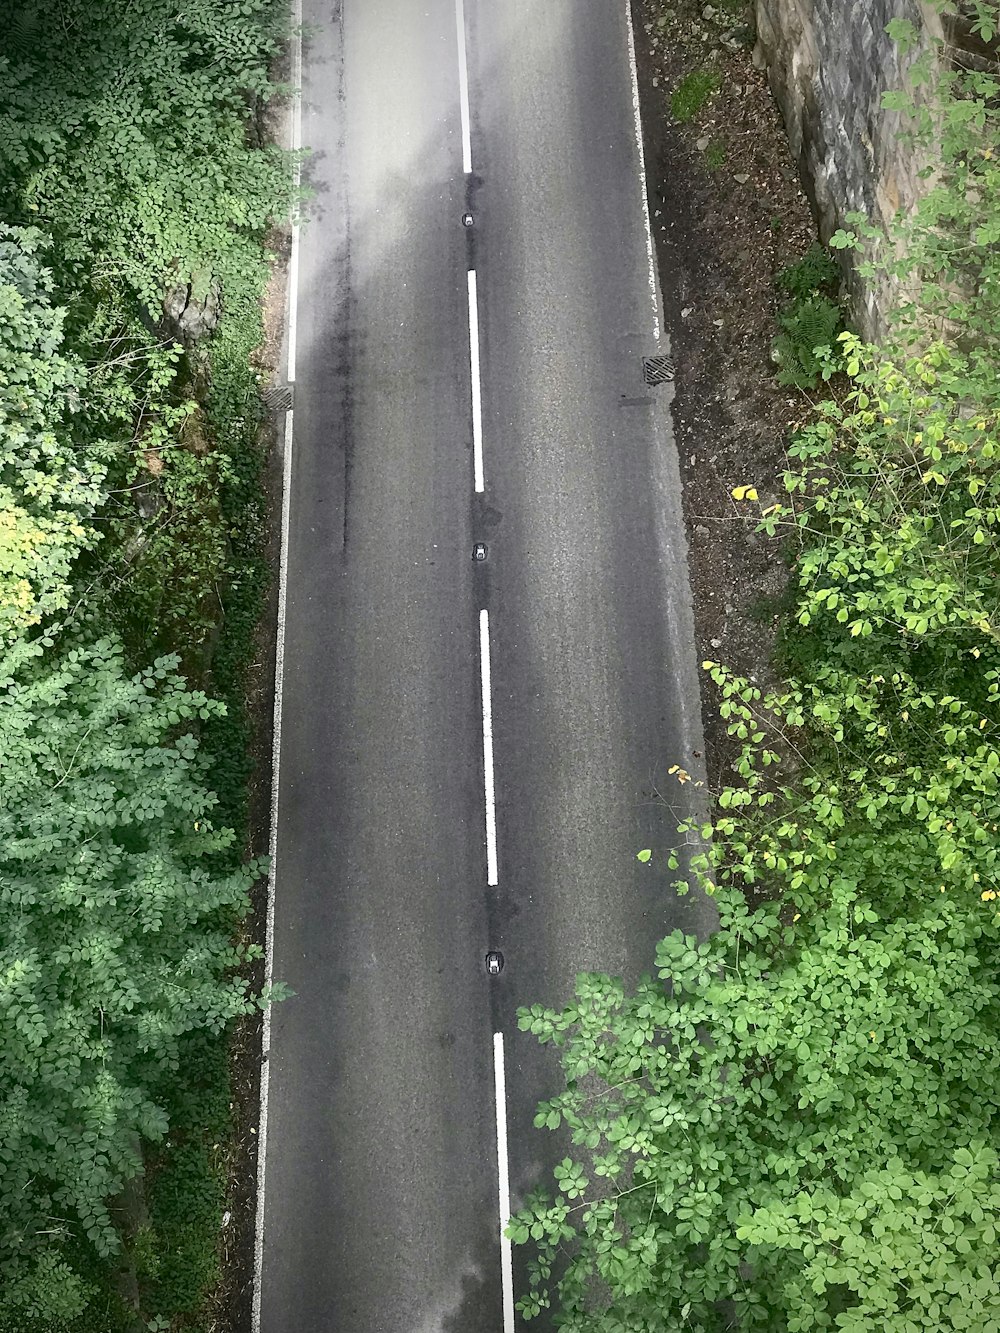 uma estrada com árvores ao lado